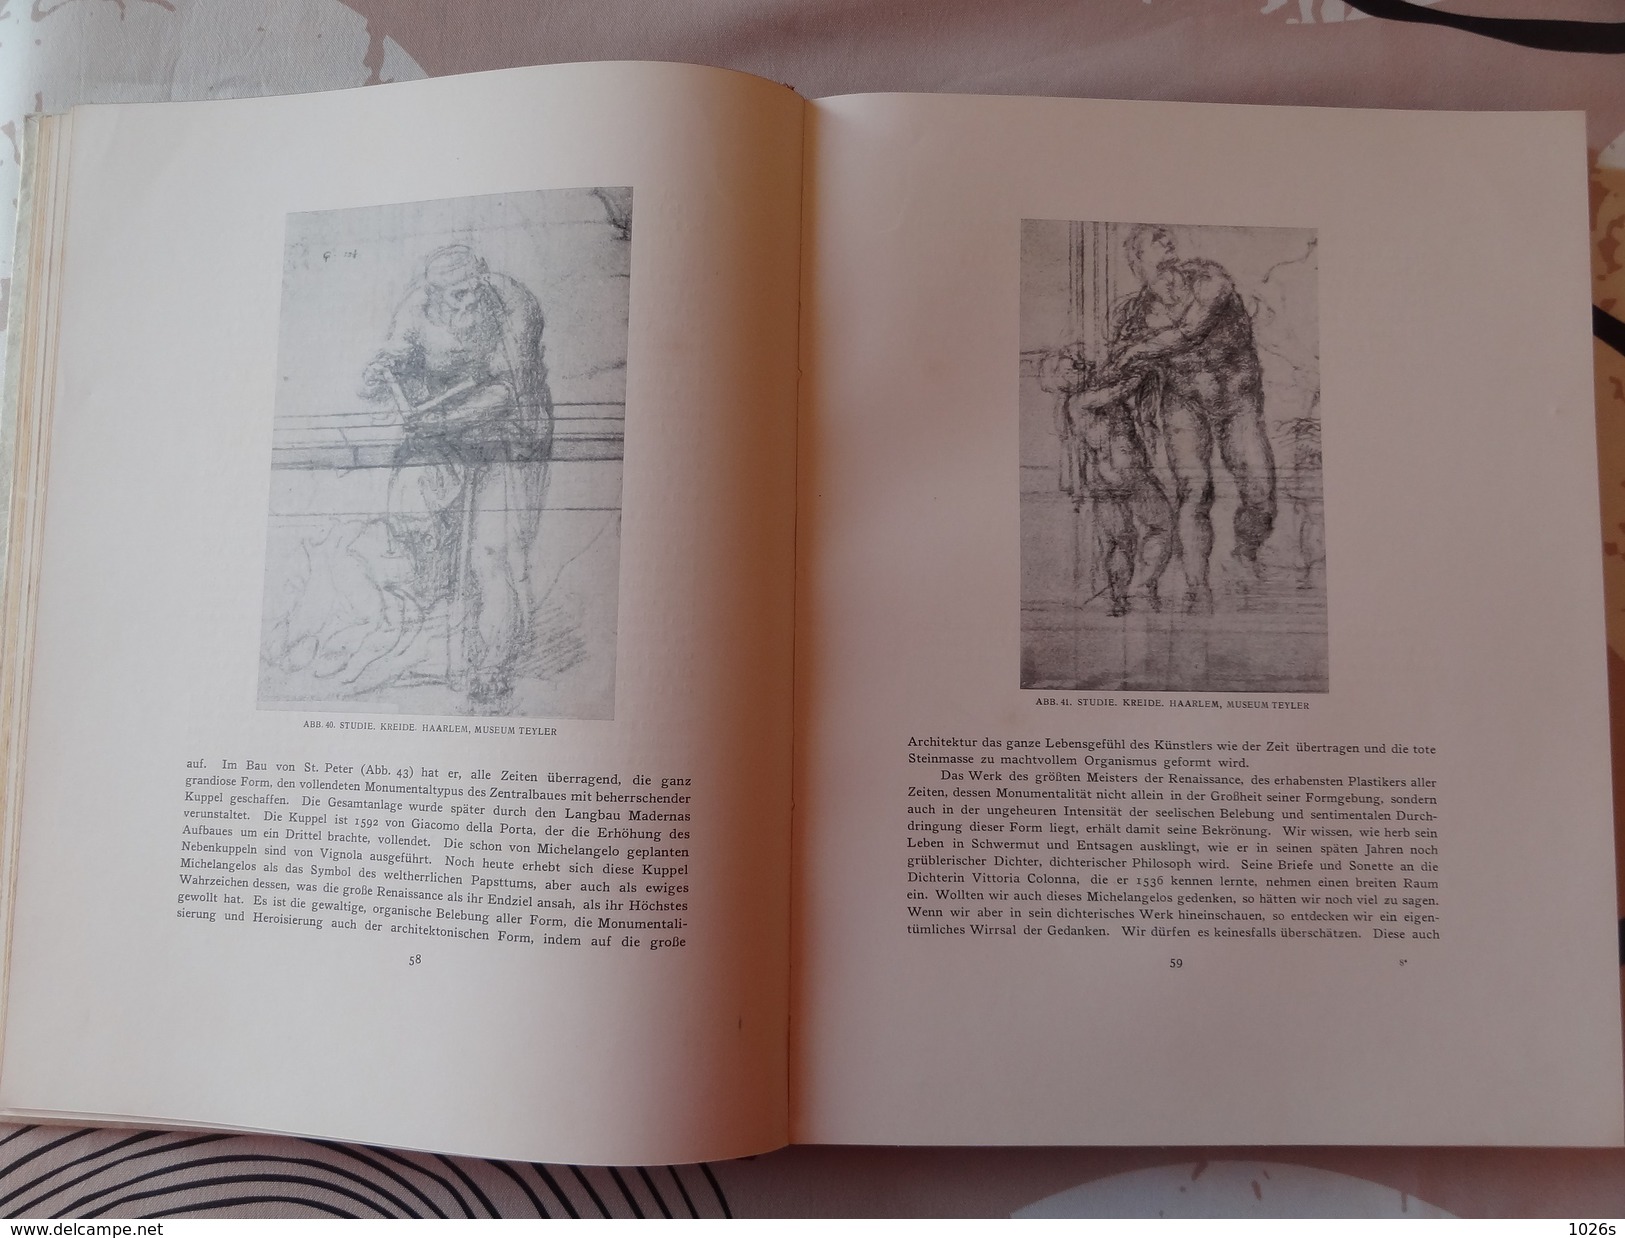 LIVRE D'ART SUR MICHELANGELO DE 1923 PAR FRITZ KNAPP PAR LES EDITIONS F.BRUCKMANN - MUNCHEN - Museen & Ausstellungen